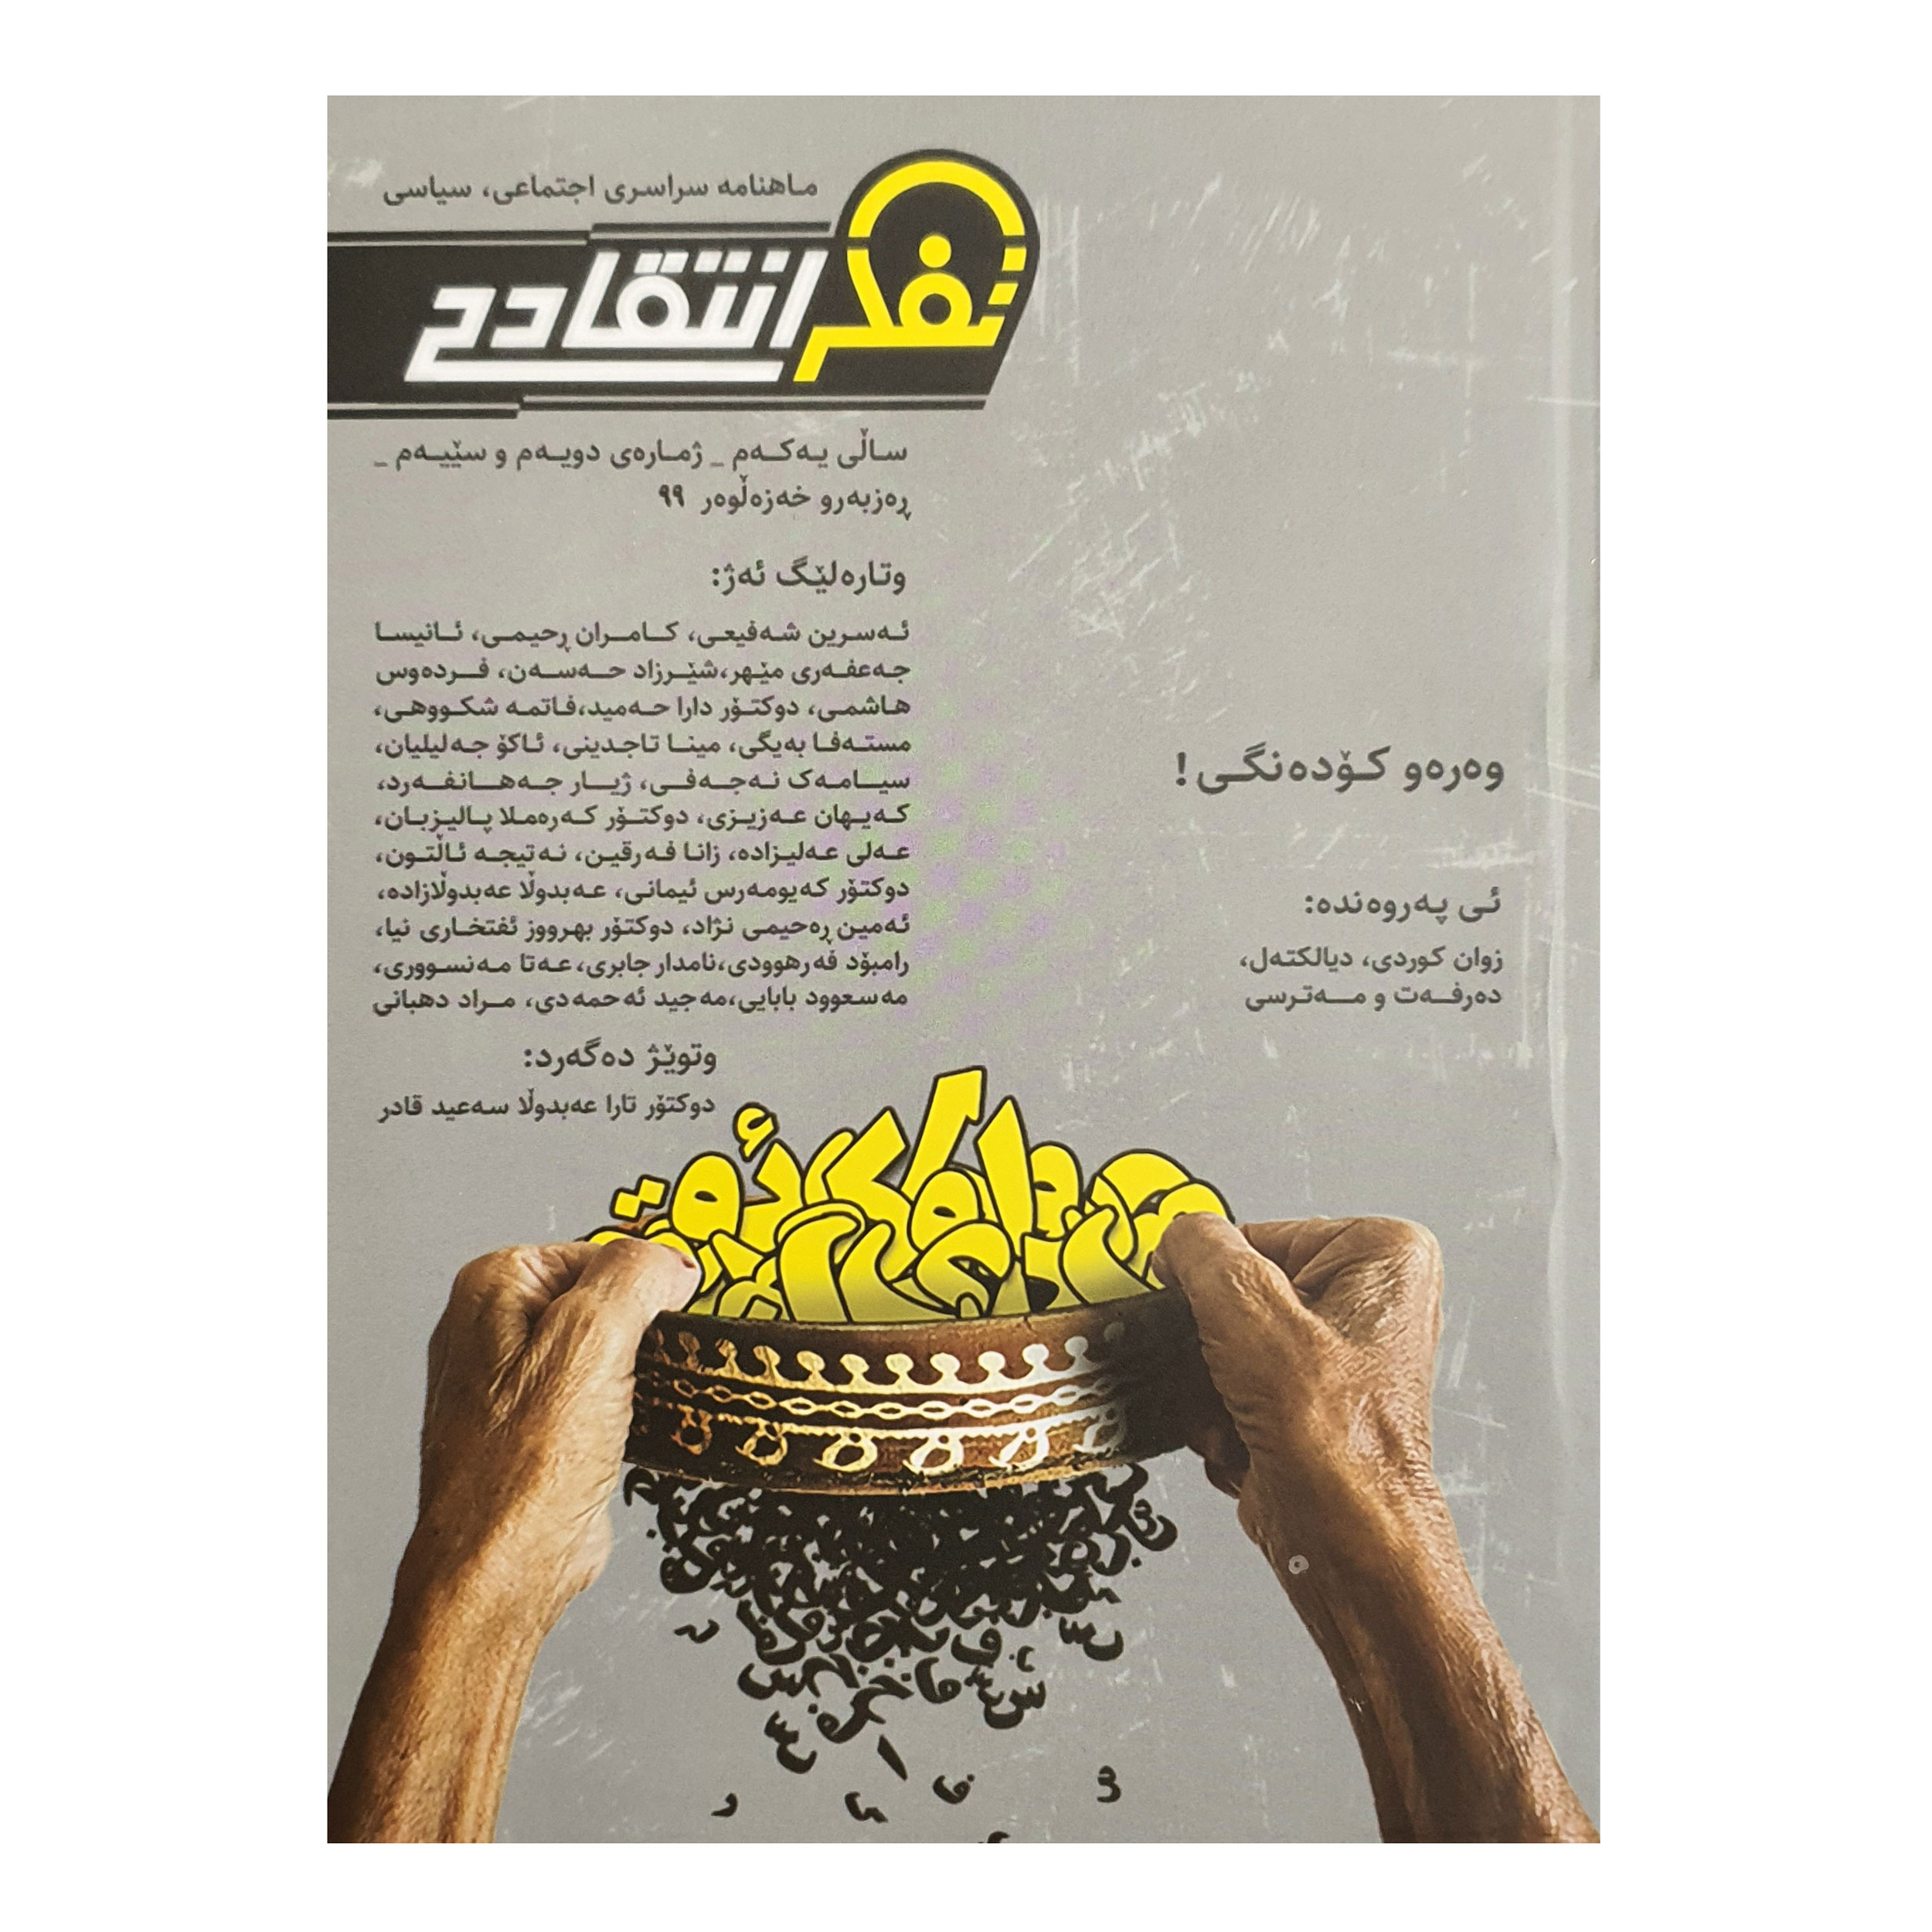 ماهنامه تفکر انتقادی به زبان کردی و فارسی شماره 2 و 3